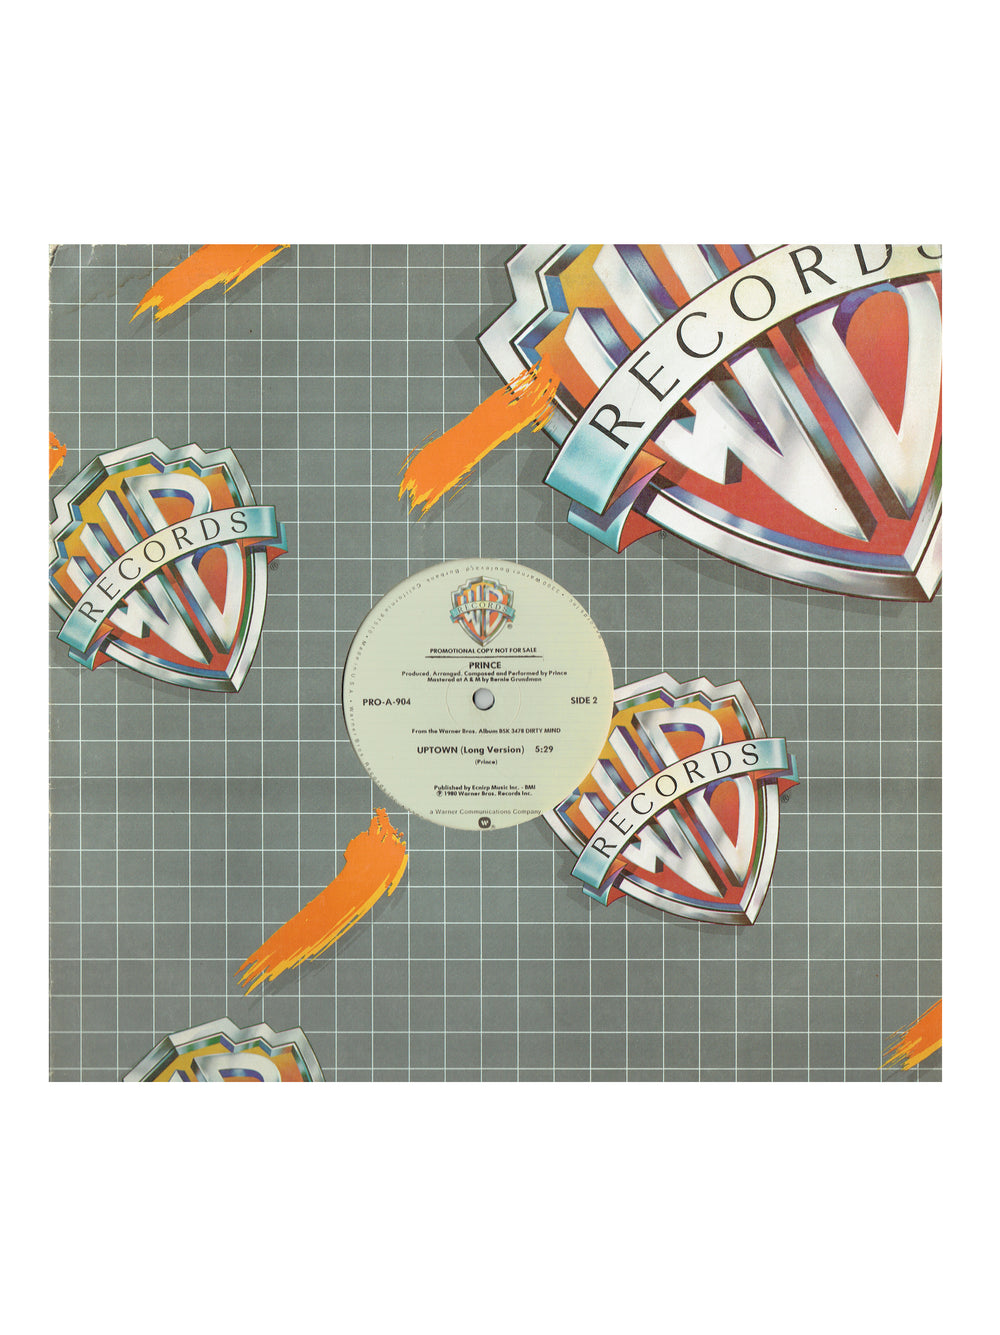 Prince – Uptown Vinyl 12" Single Warner Bros. Records Promo US Preloved: 1980